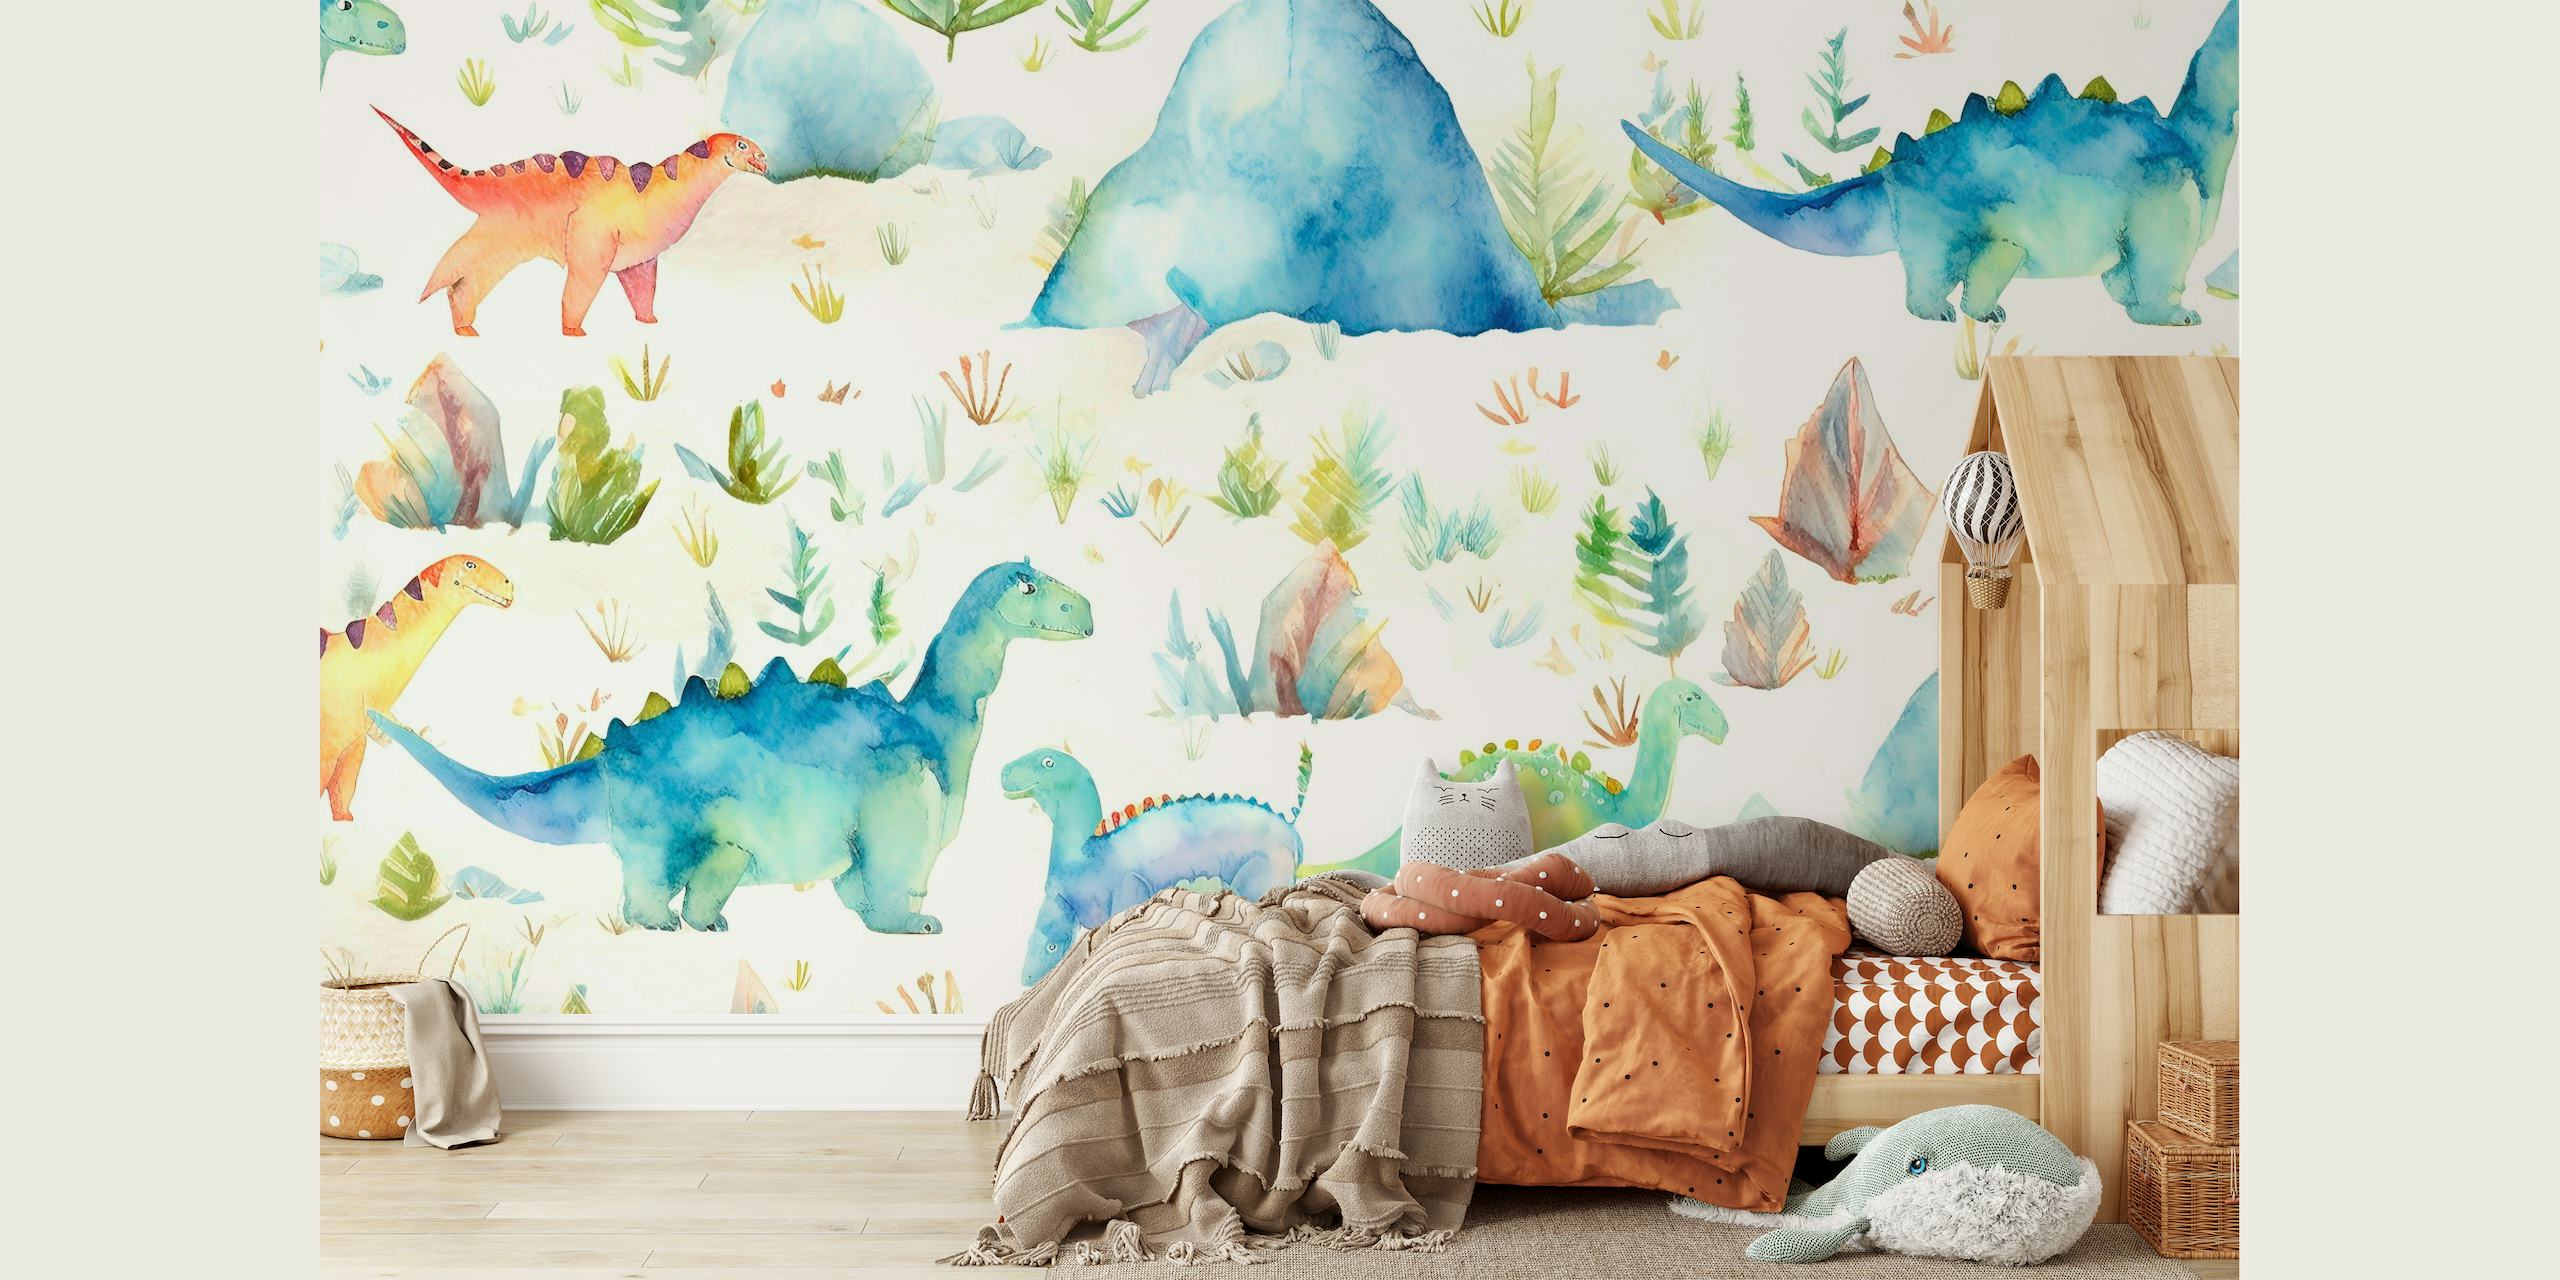 Aquarell-Dinosaurier-Wandbild mit sanften Pastelltönen und prähistorischer Landschaft.